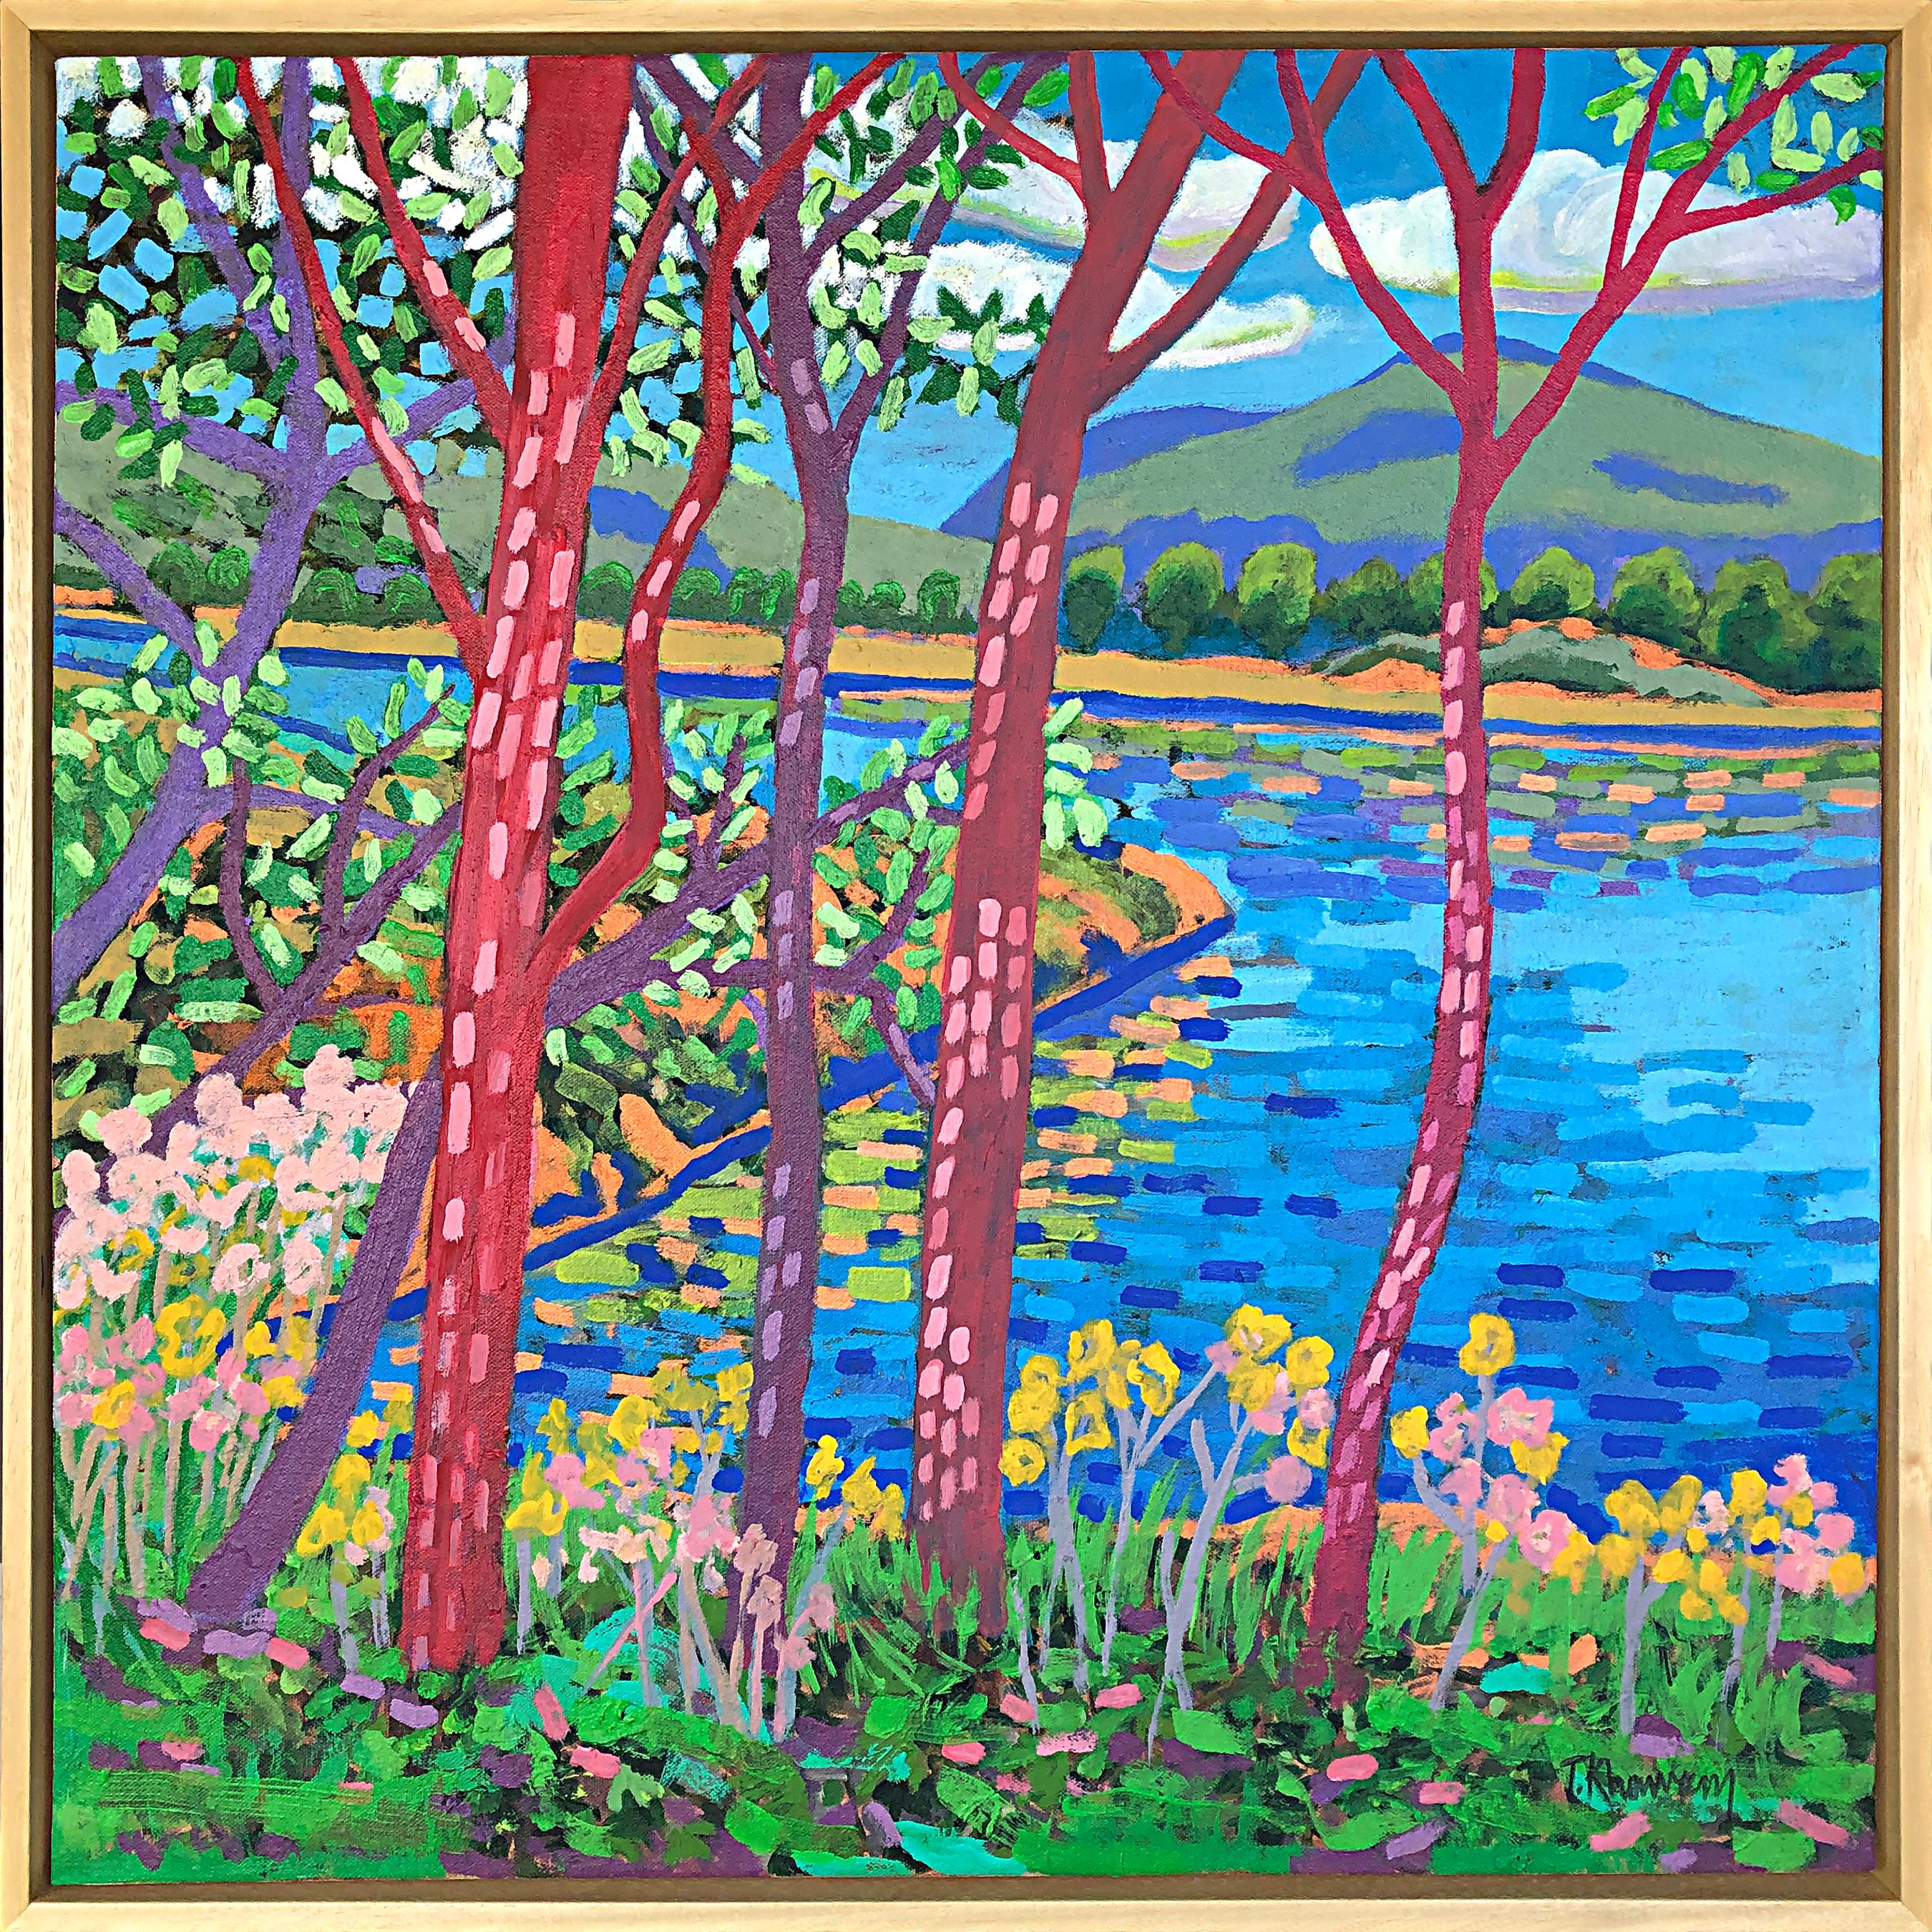 Tony Khawam Landscape Painting – West Point durch die Sümpfe